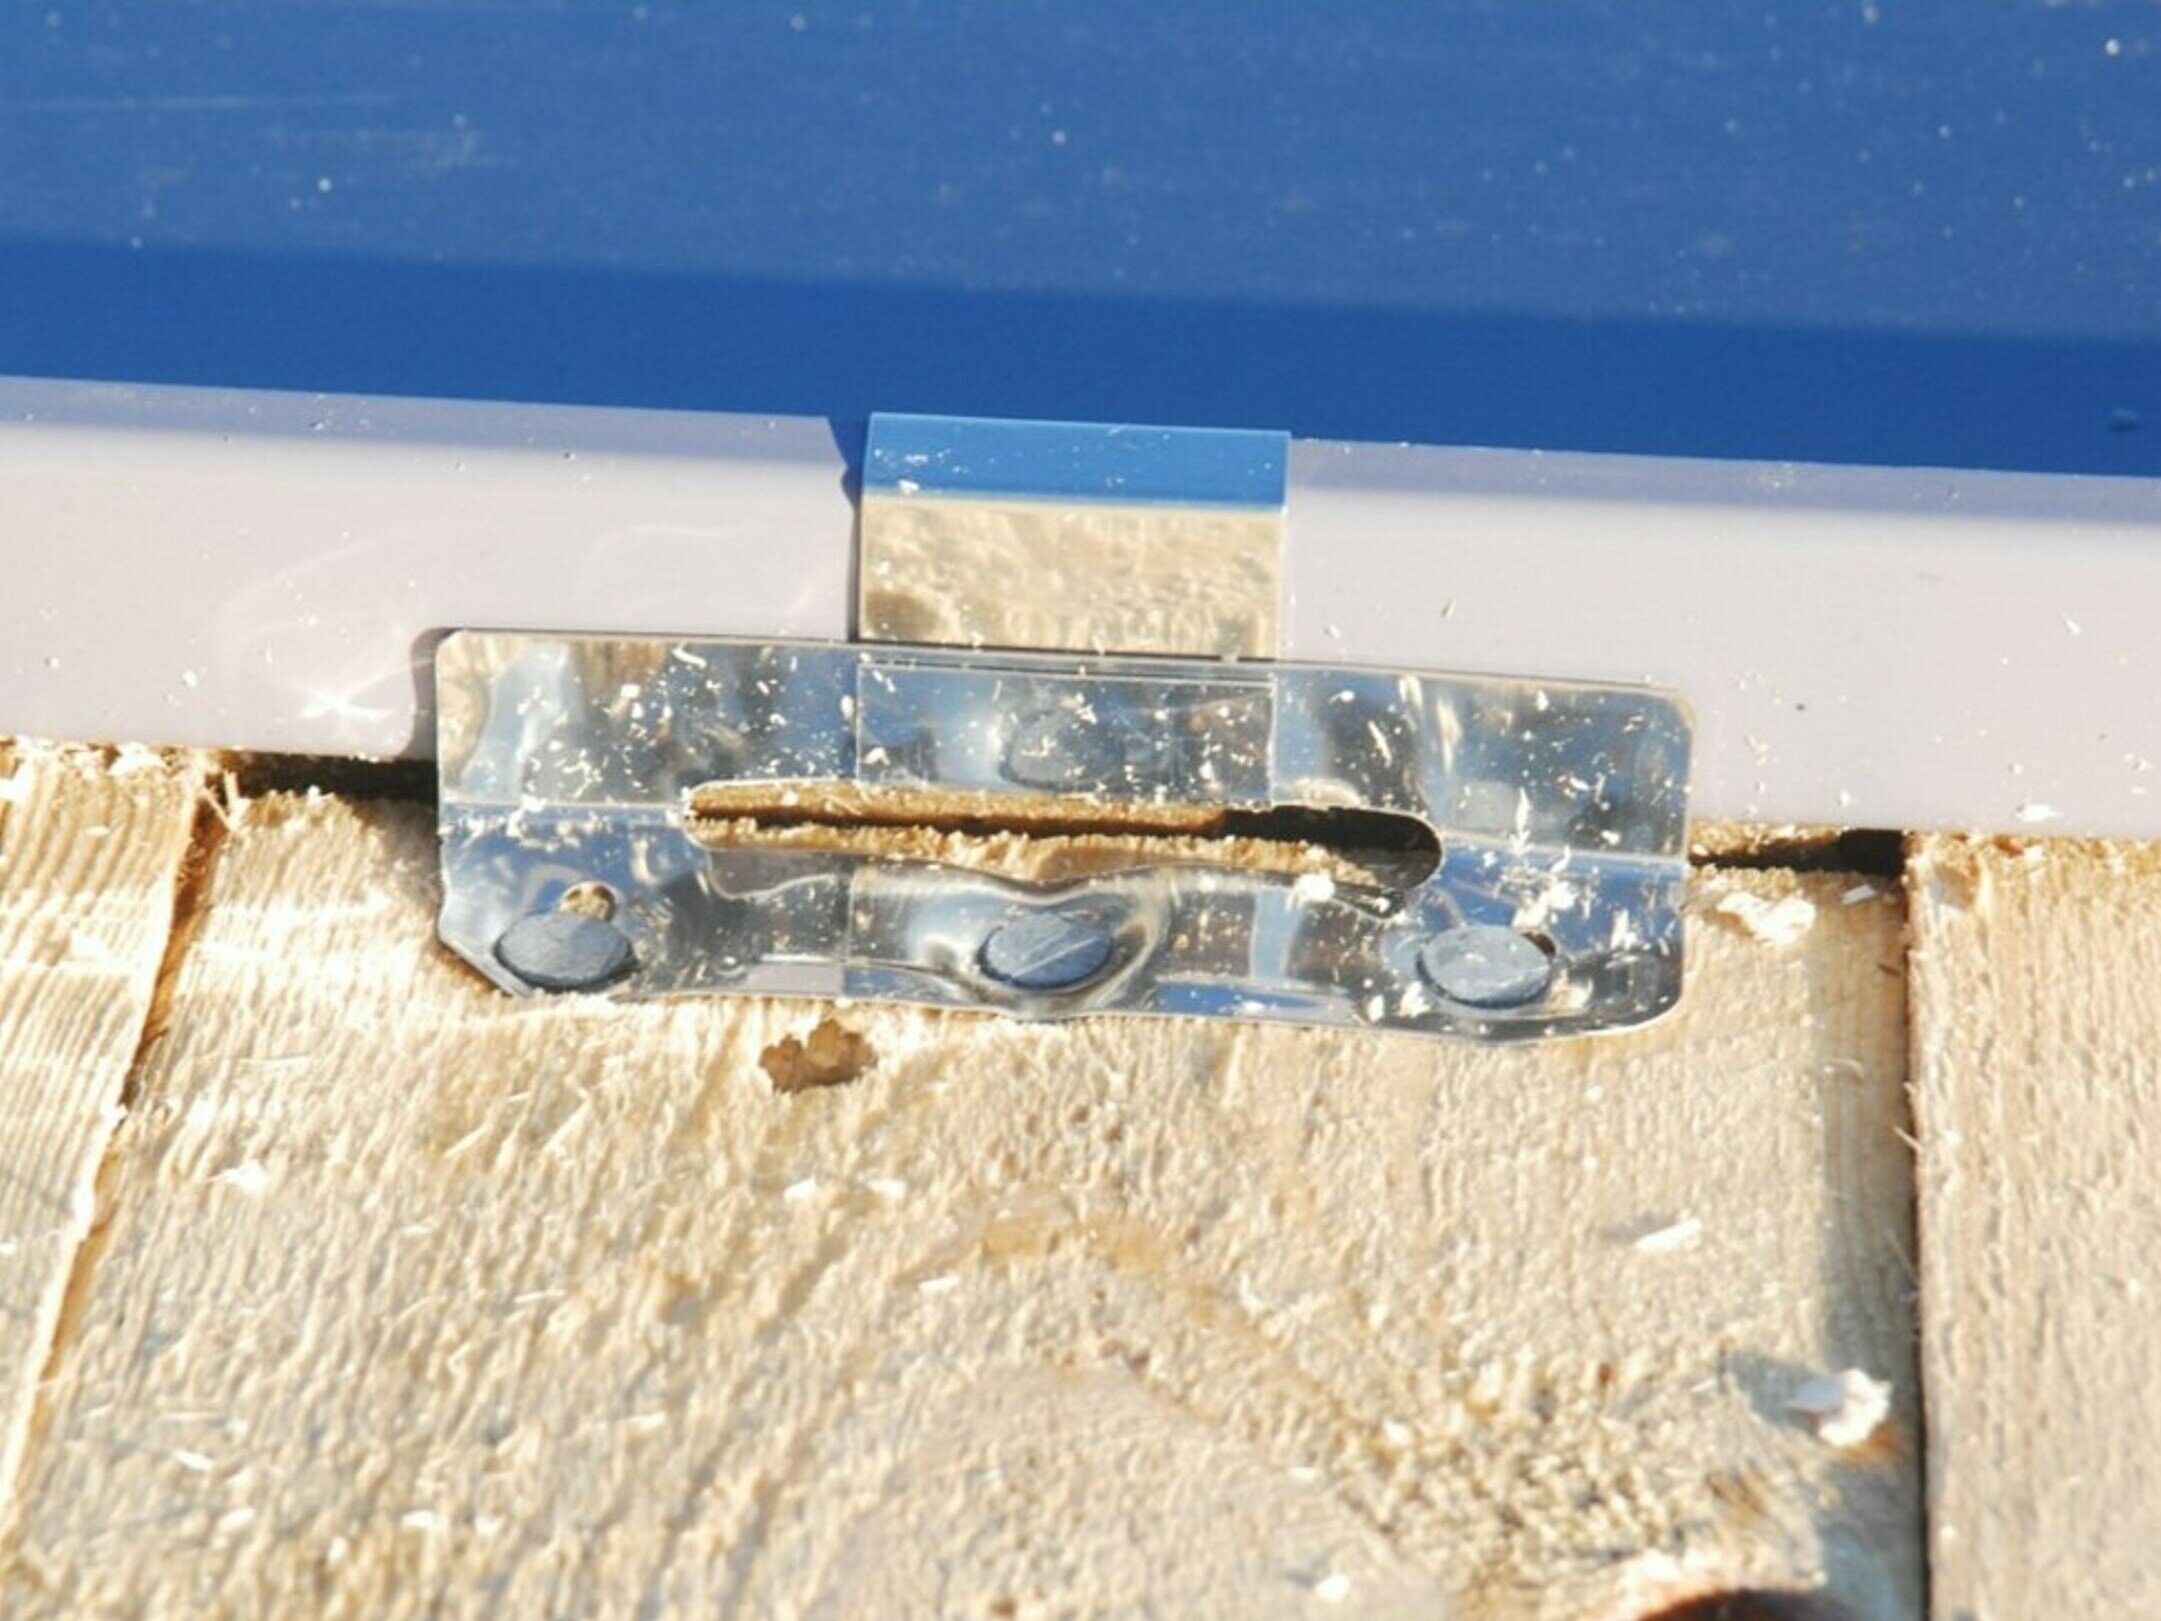 In der Abbildung sieht man eine PREFA NIRO Winkelschiebehaft, die unfachgerecht montiert wurde. Die Nägel verformen die Haftenden stark.